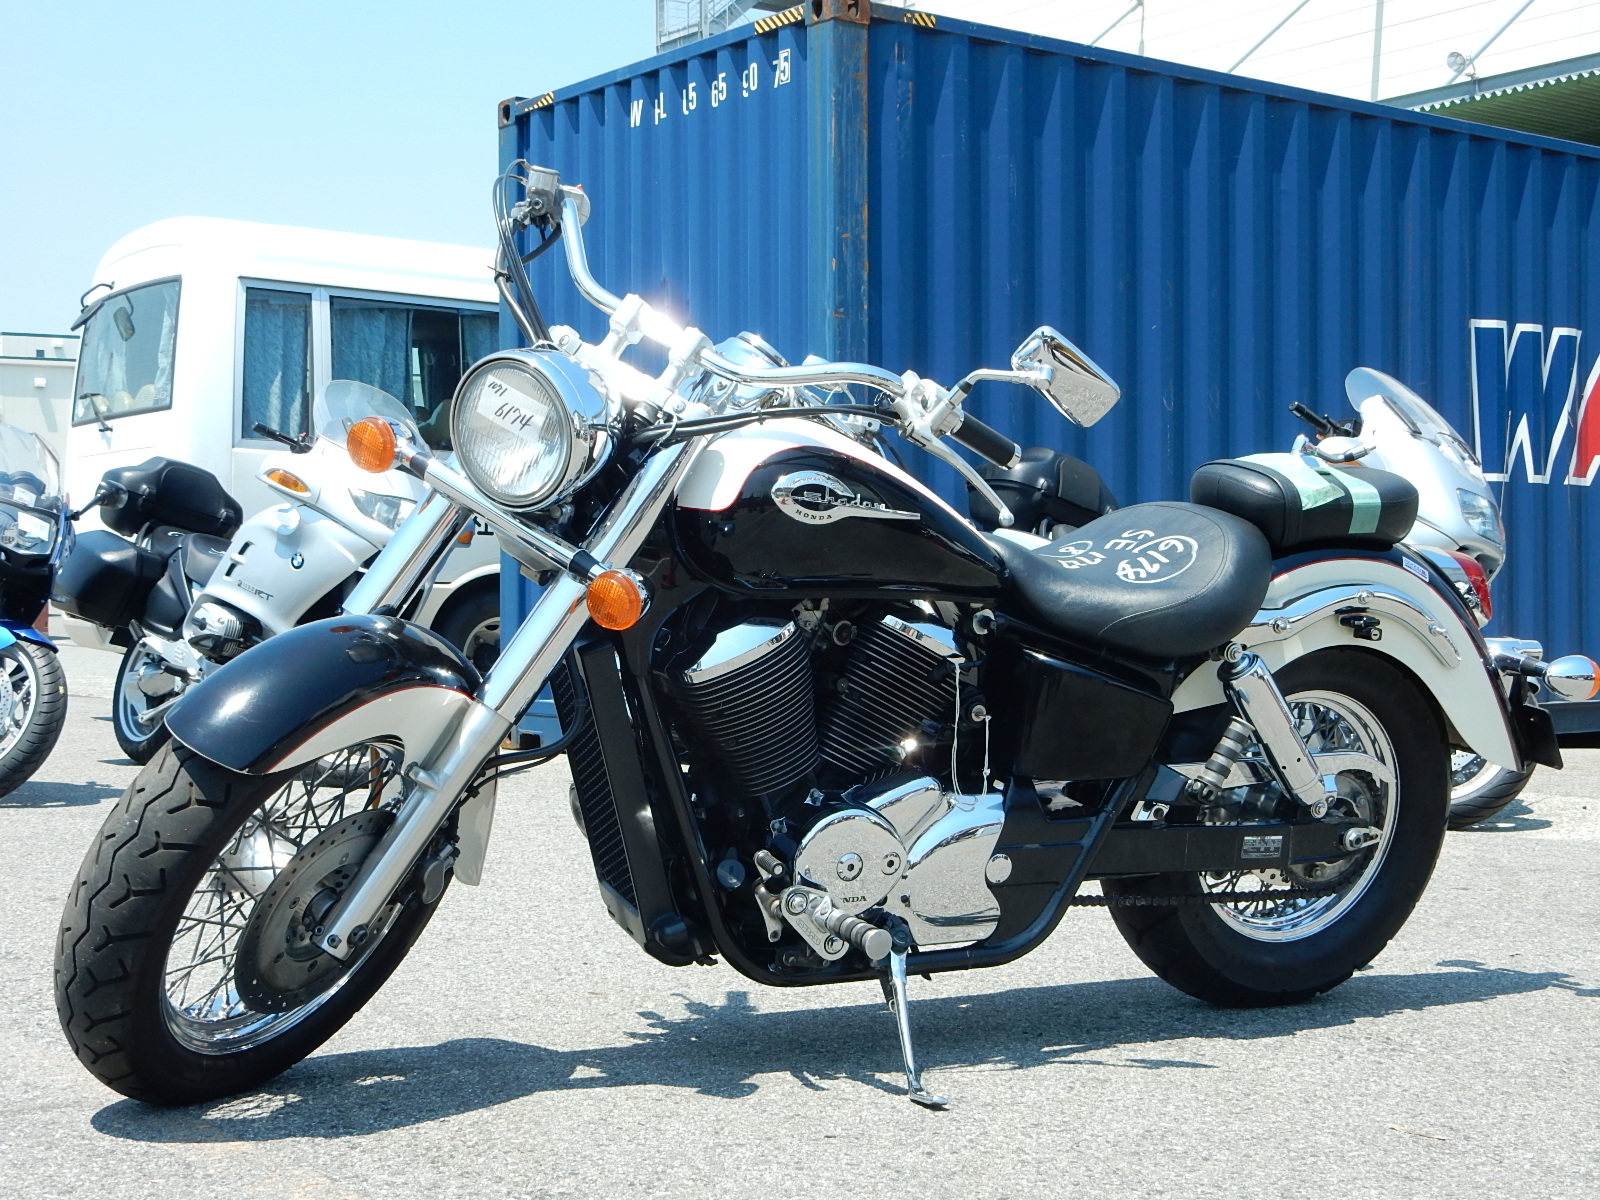 Мотоцикл shadow vlx deluxe: технические характеристики, фото, видео